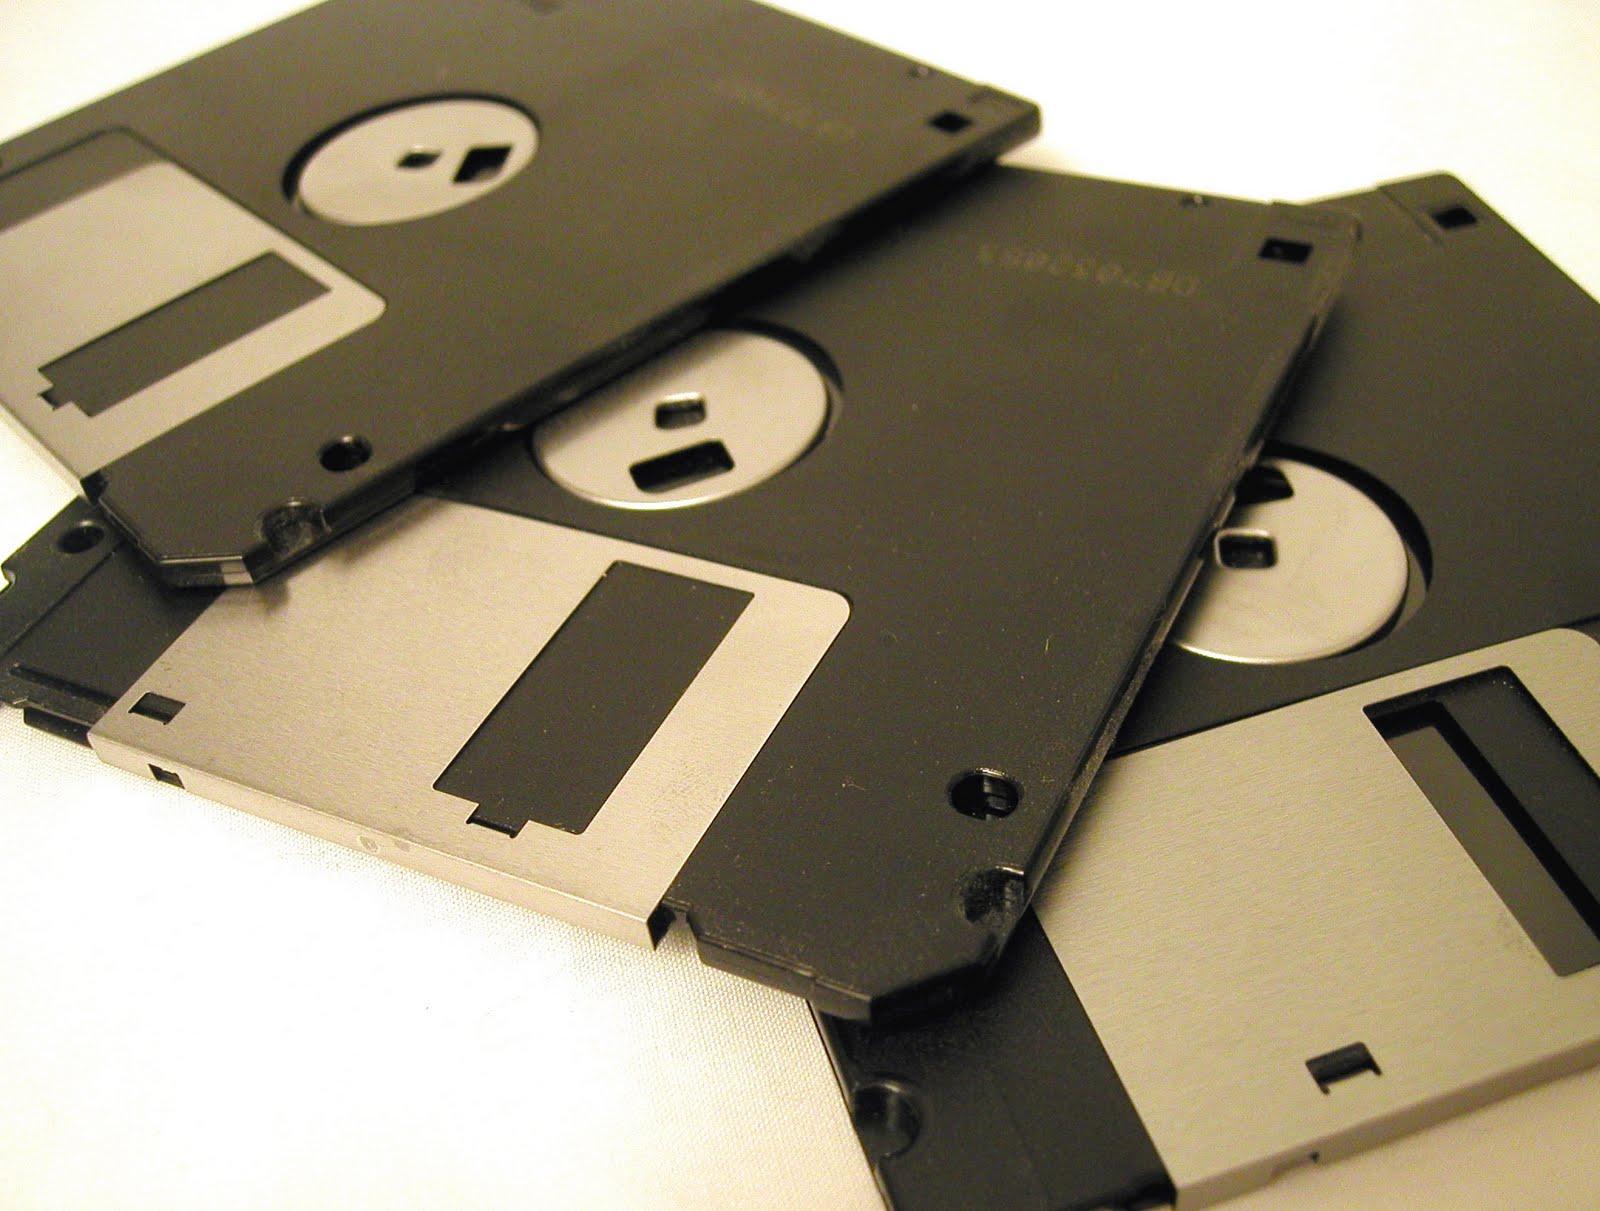 floppy disk format for windows 10